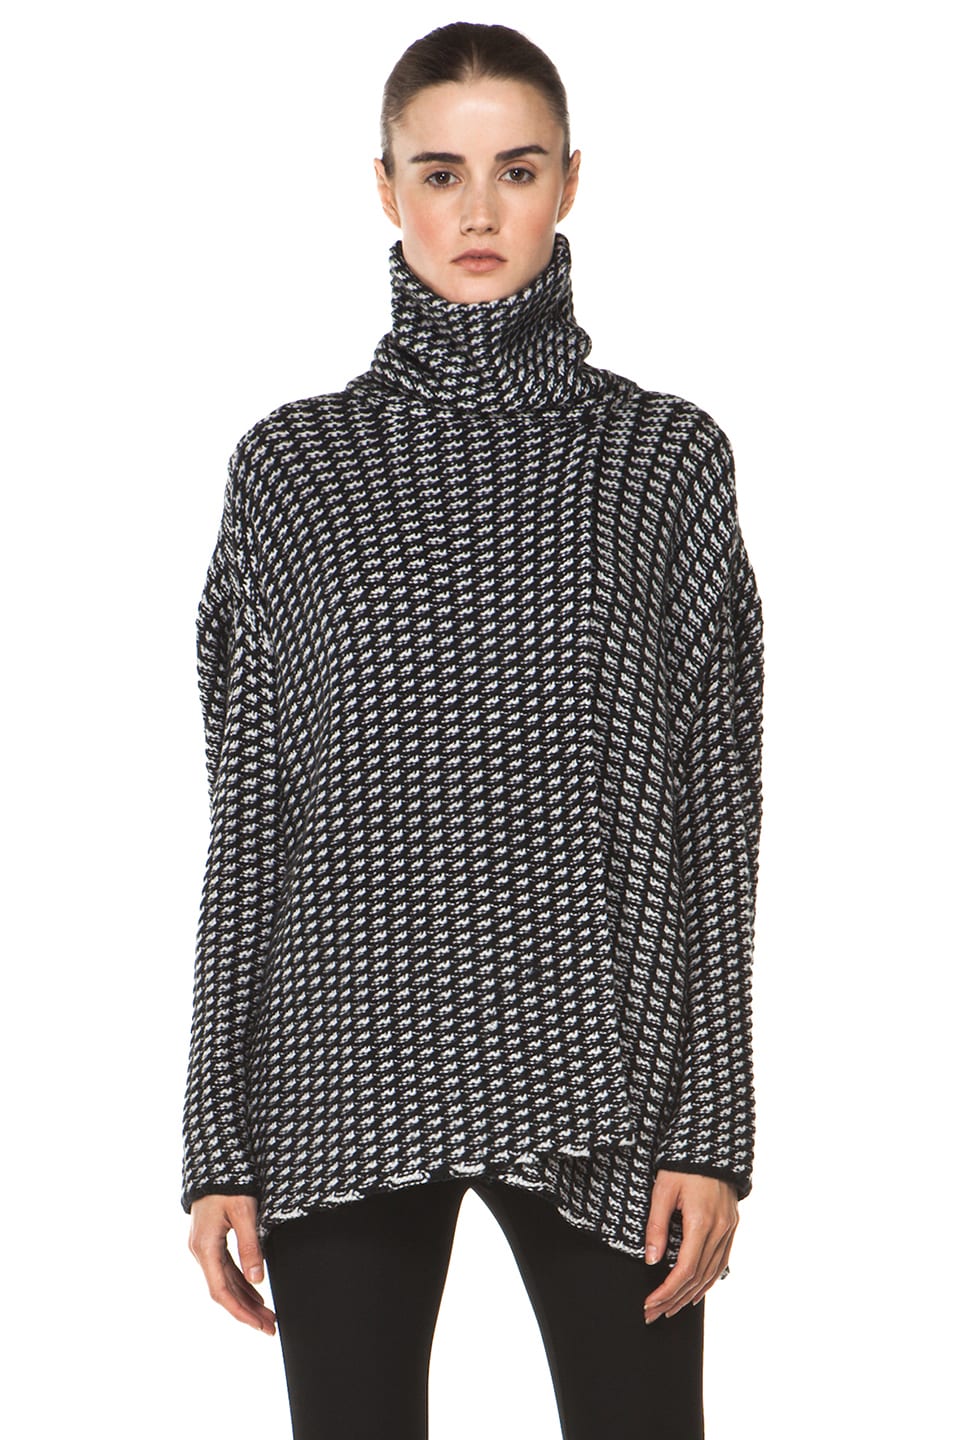 Diane von Furstenberg Ahiga Tweed Sweater in Black & Chalk | FWRD